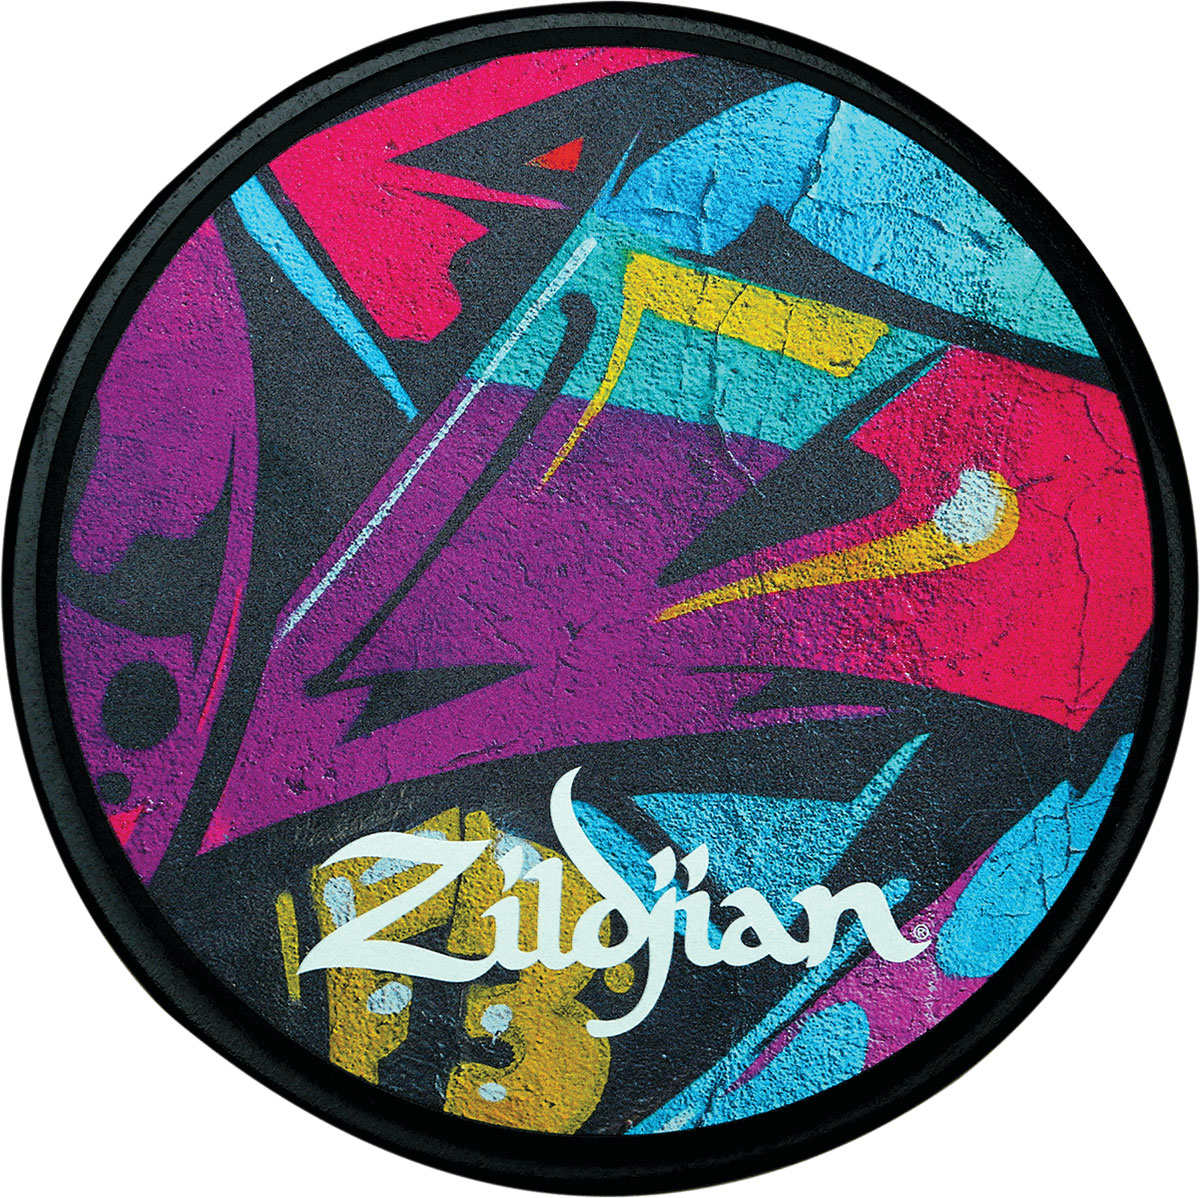 ZILDJIAN ACCESSORIES ZXPPGRA12 - PAD DE PRCTICA 12